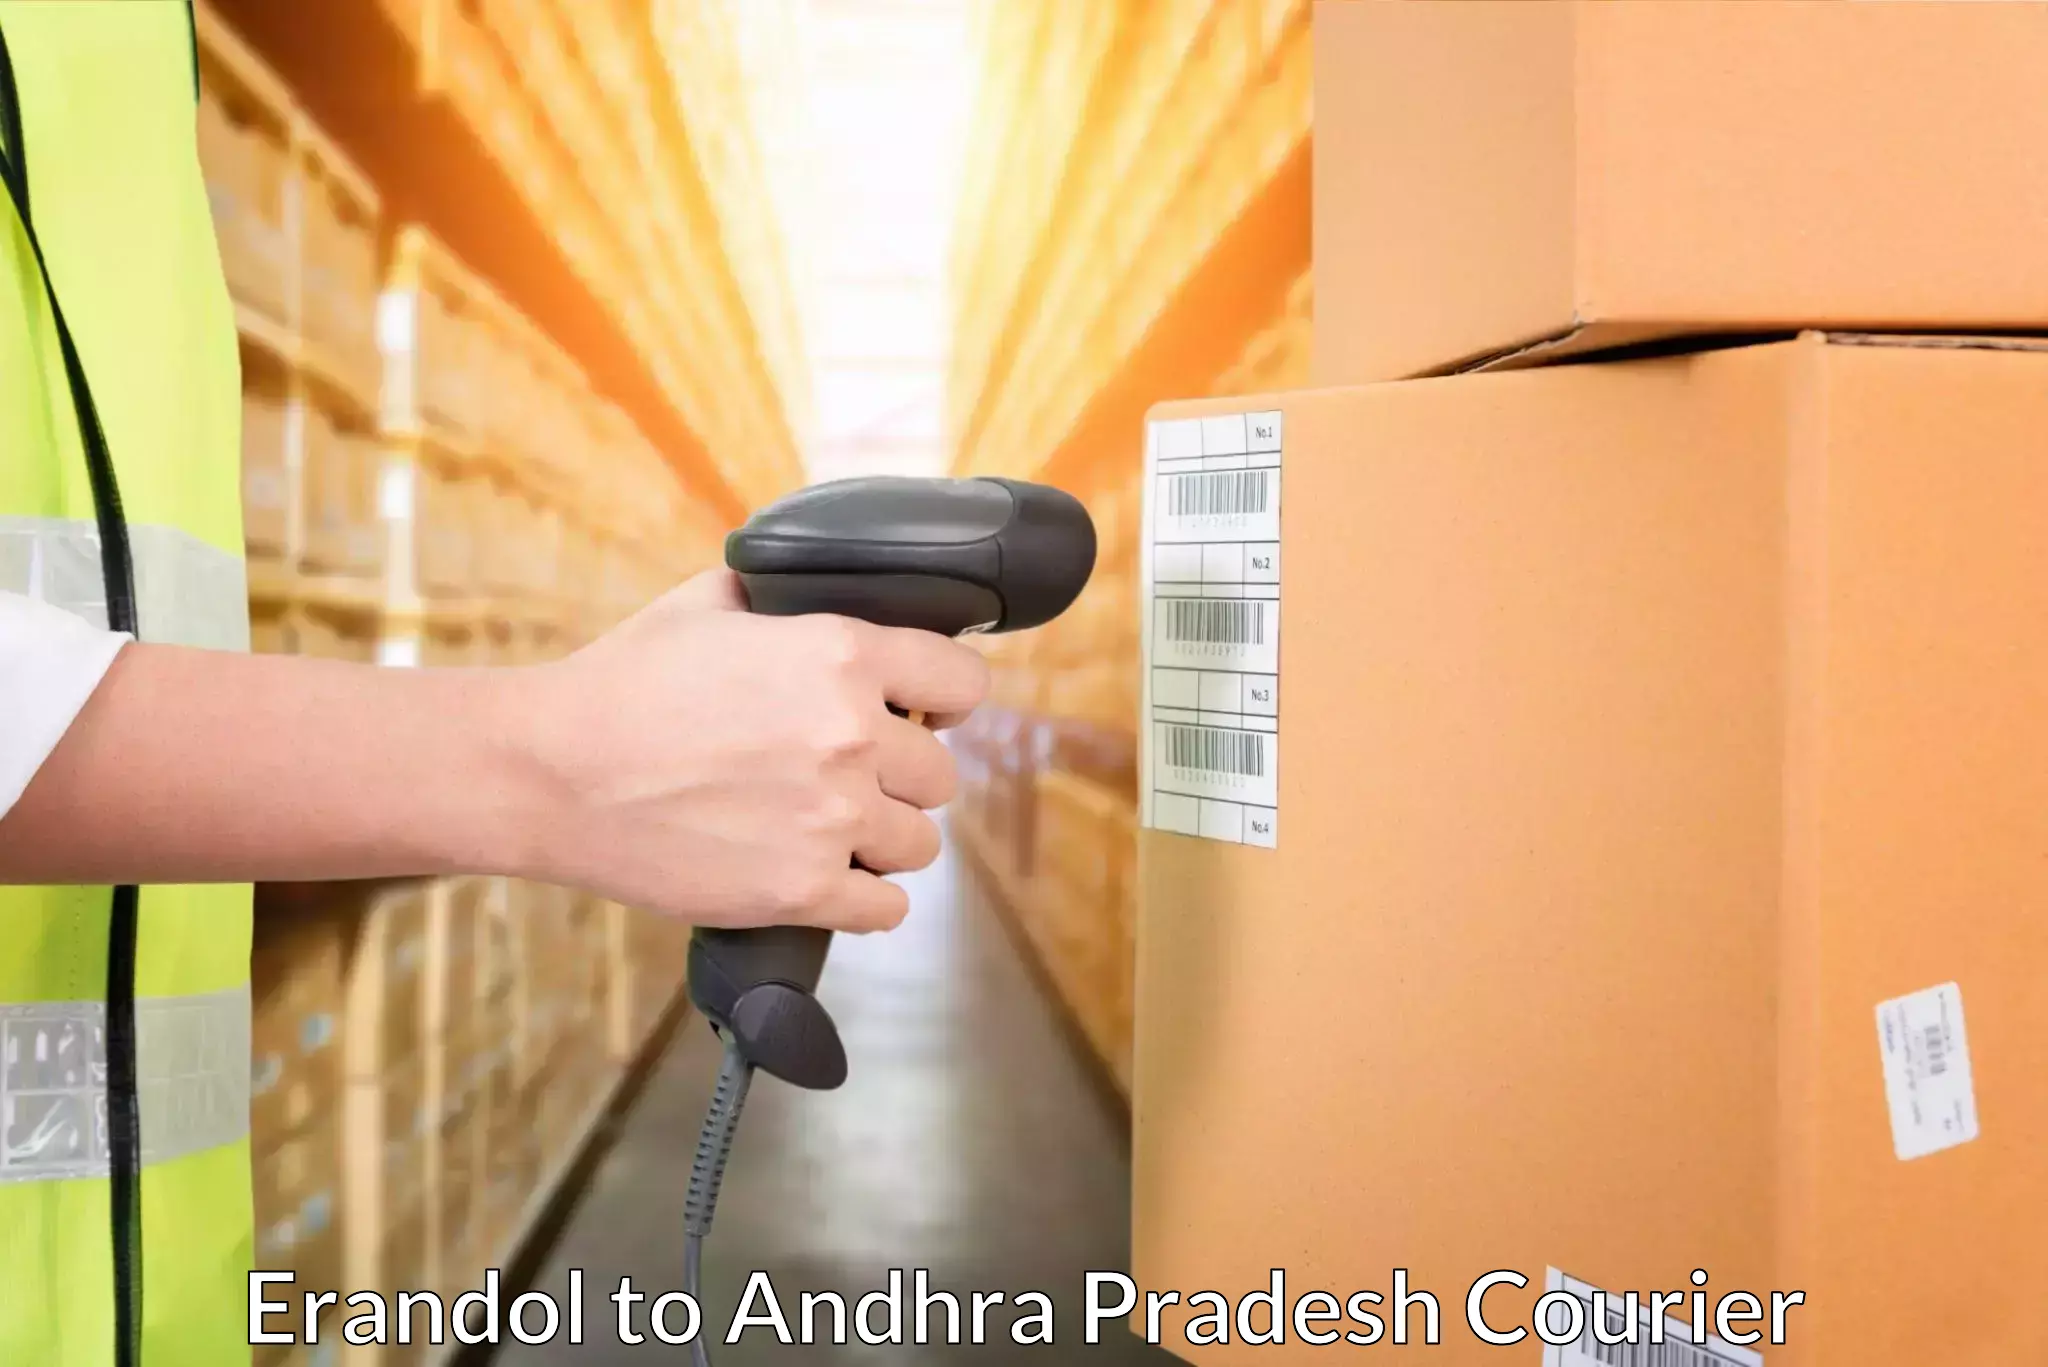 Courier service efficiency Erandol to Andhra Pradesh